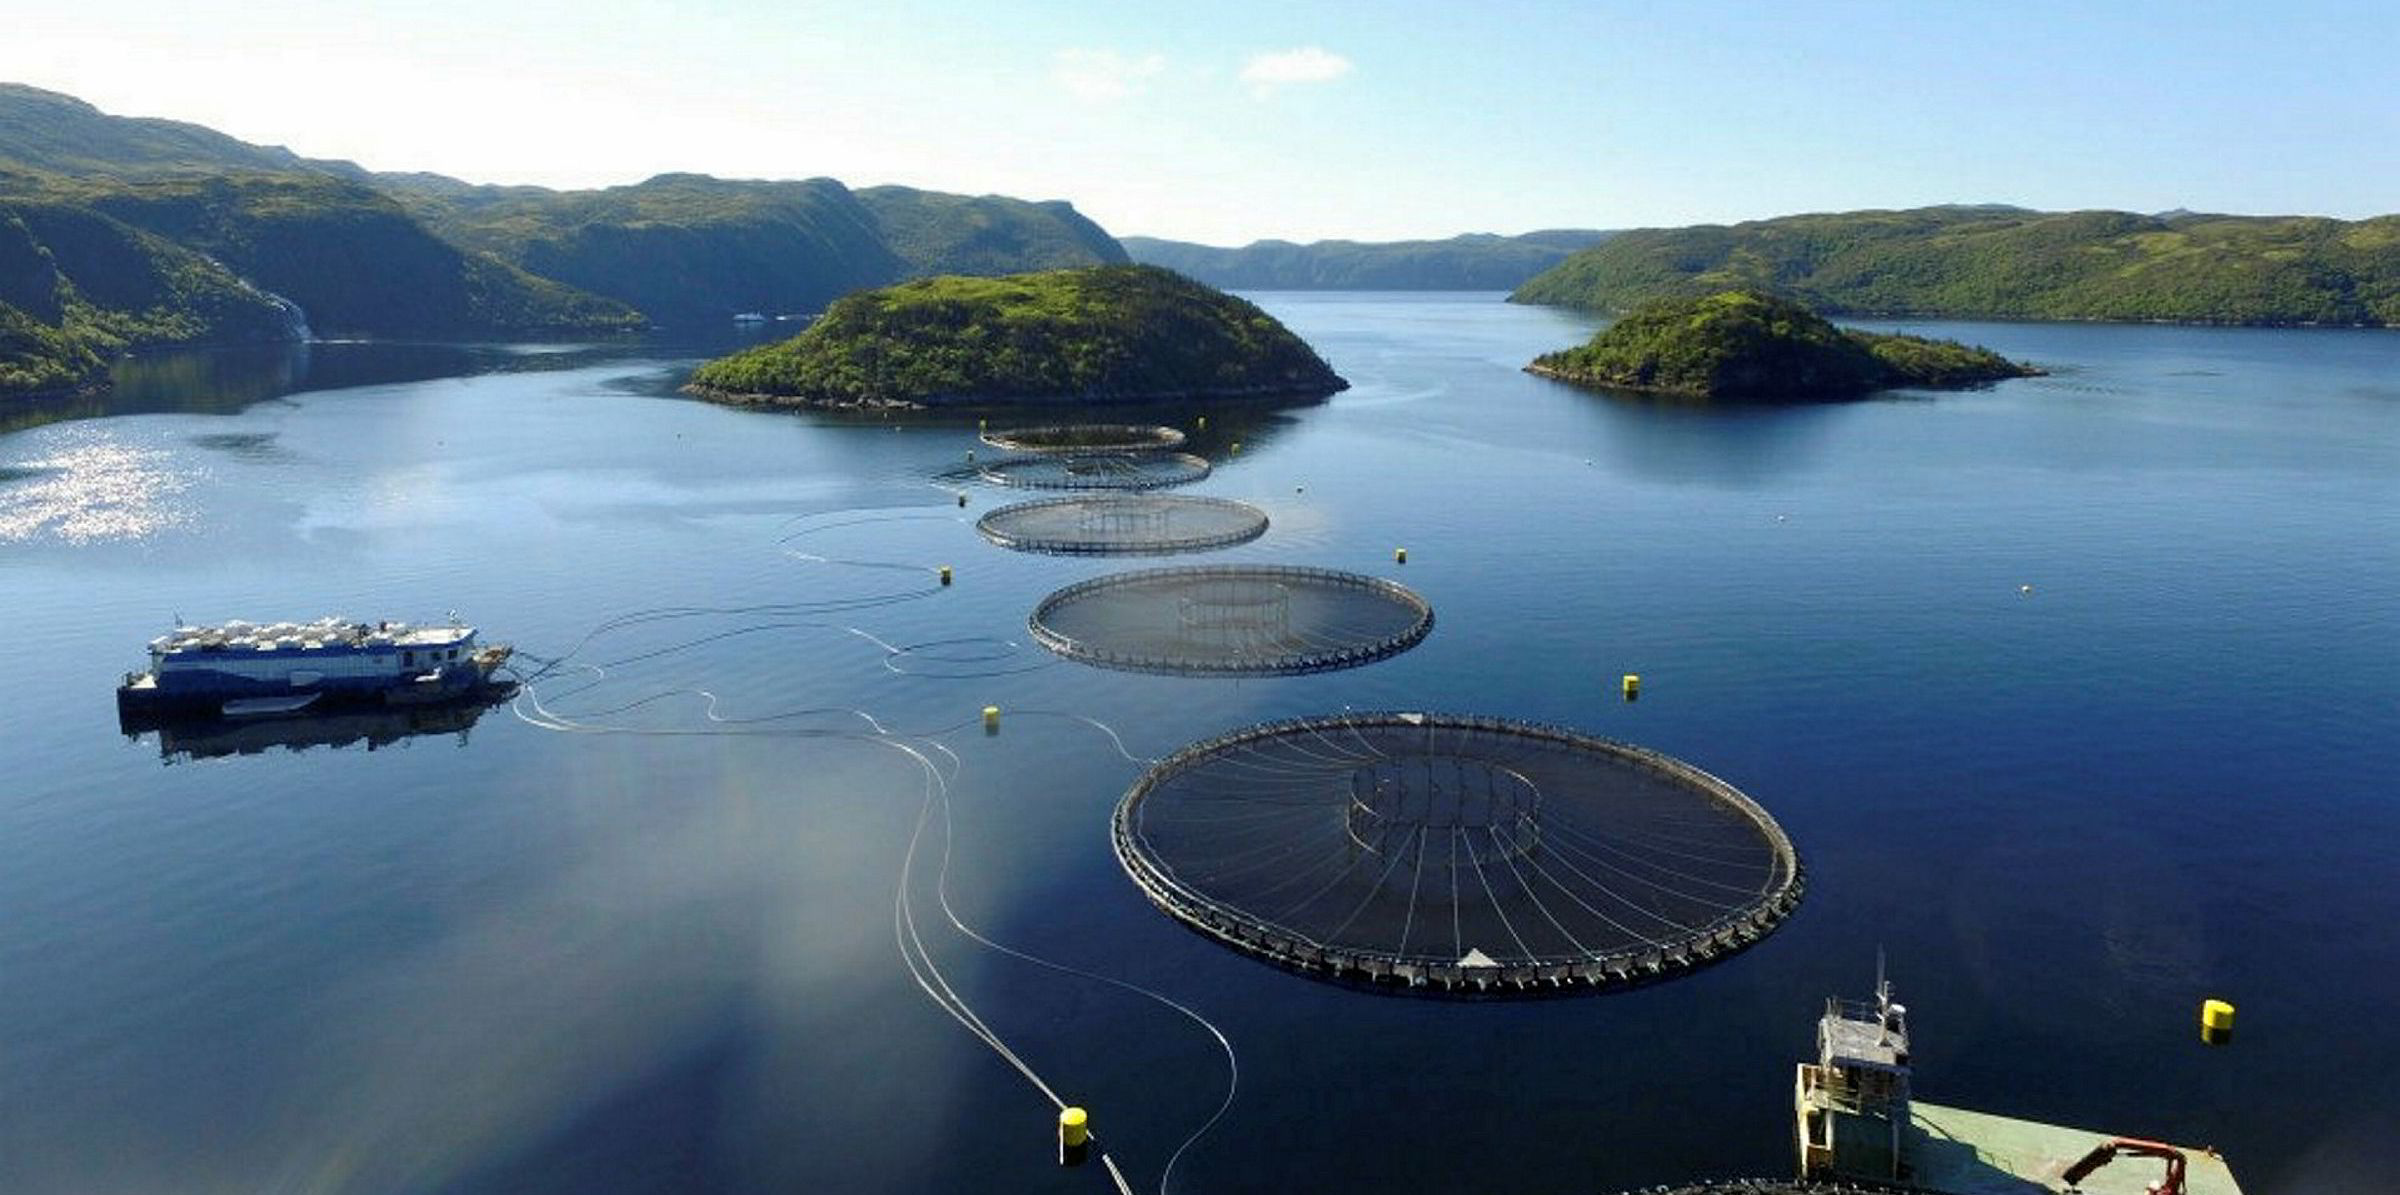 Cooke Aquaculture's New Brunswick salmon escape stirs fresh concern